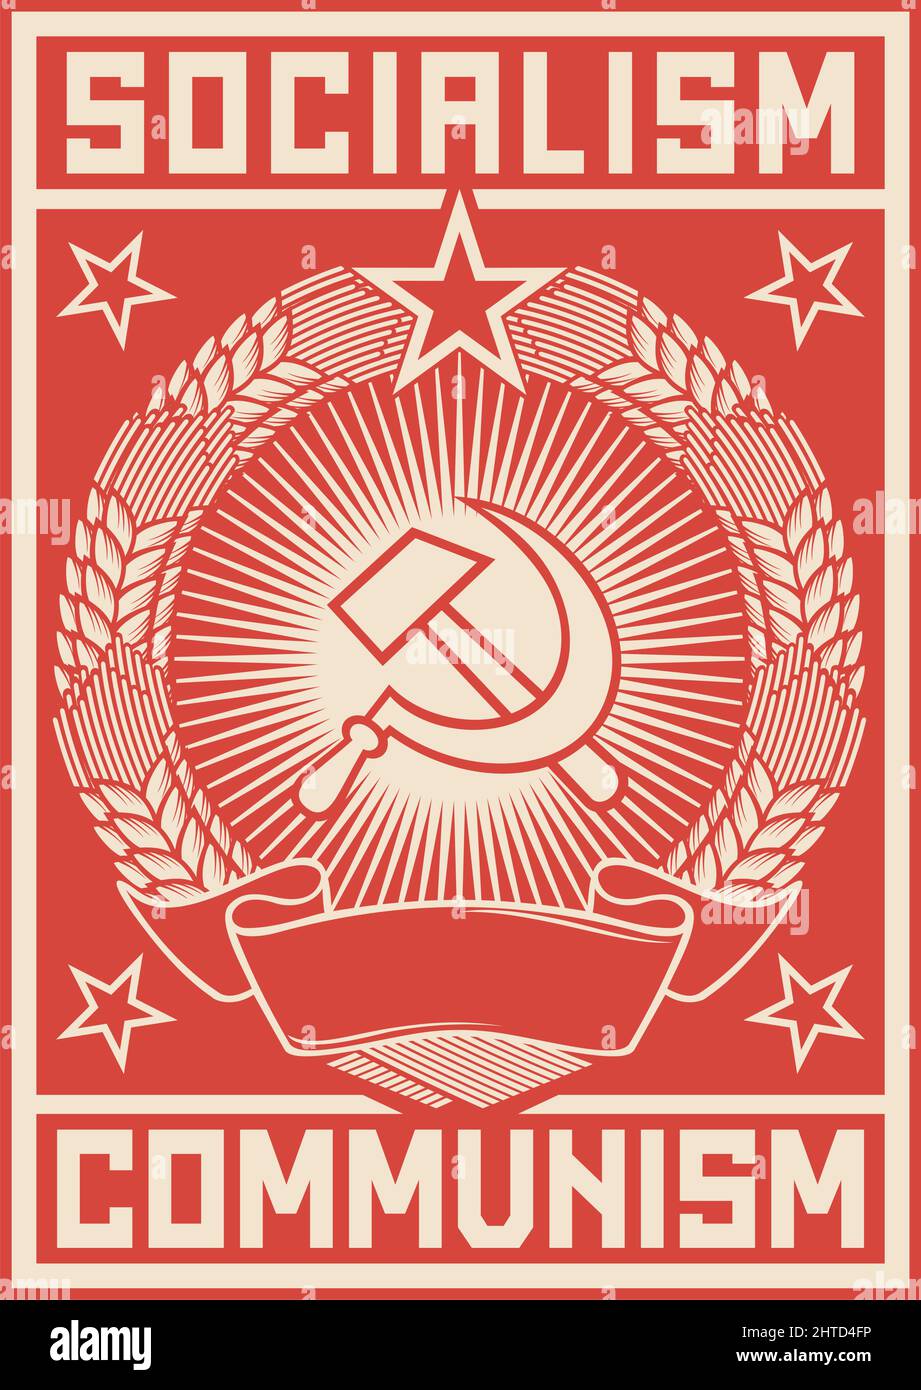 Socialismo - illustrazione vettoriale del manifesto del comunismo Illustrazione Vettoriale